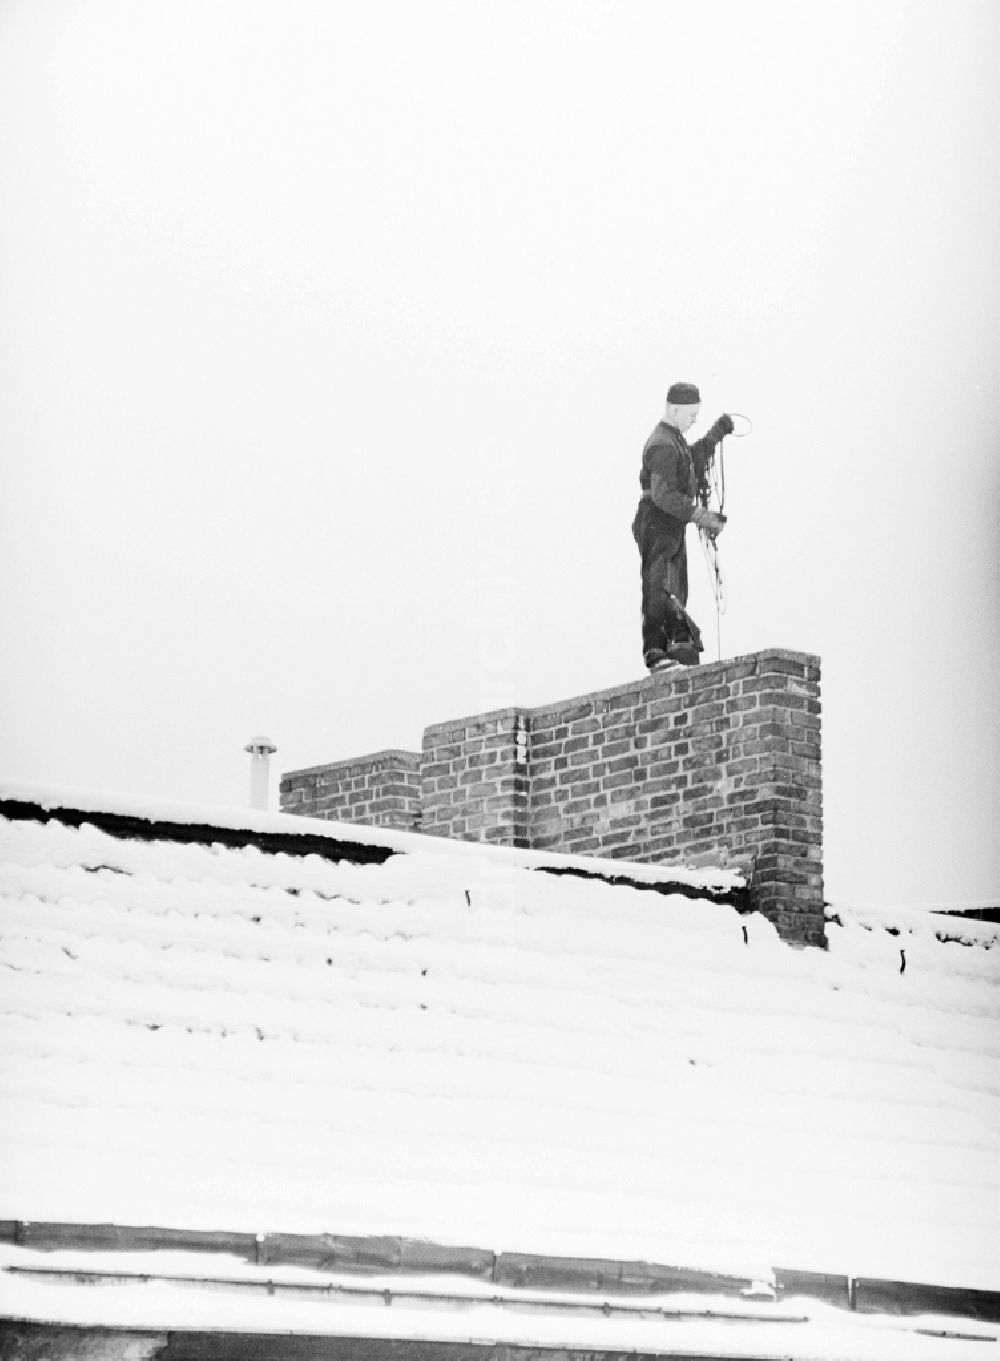 DDR-Fotoarchiv: Berlin - Schornsteinfeger auf schneebedeckten Dächern bei der Arbeit in Berlin, der ehemaligen Hauptstadt der DDR, Deutsche Demokratische Republik